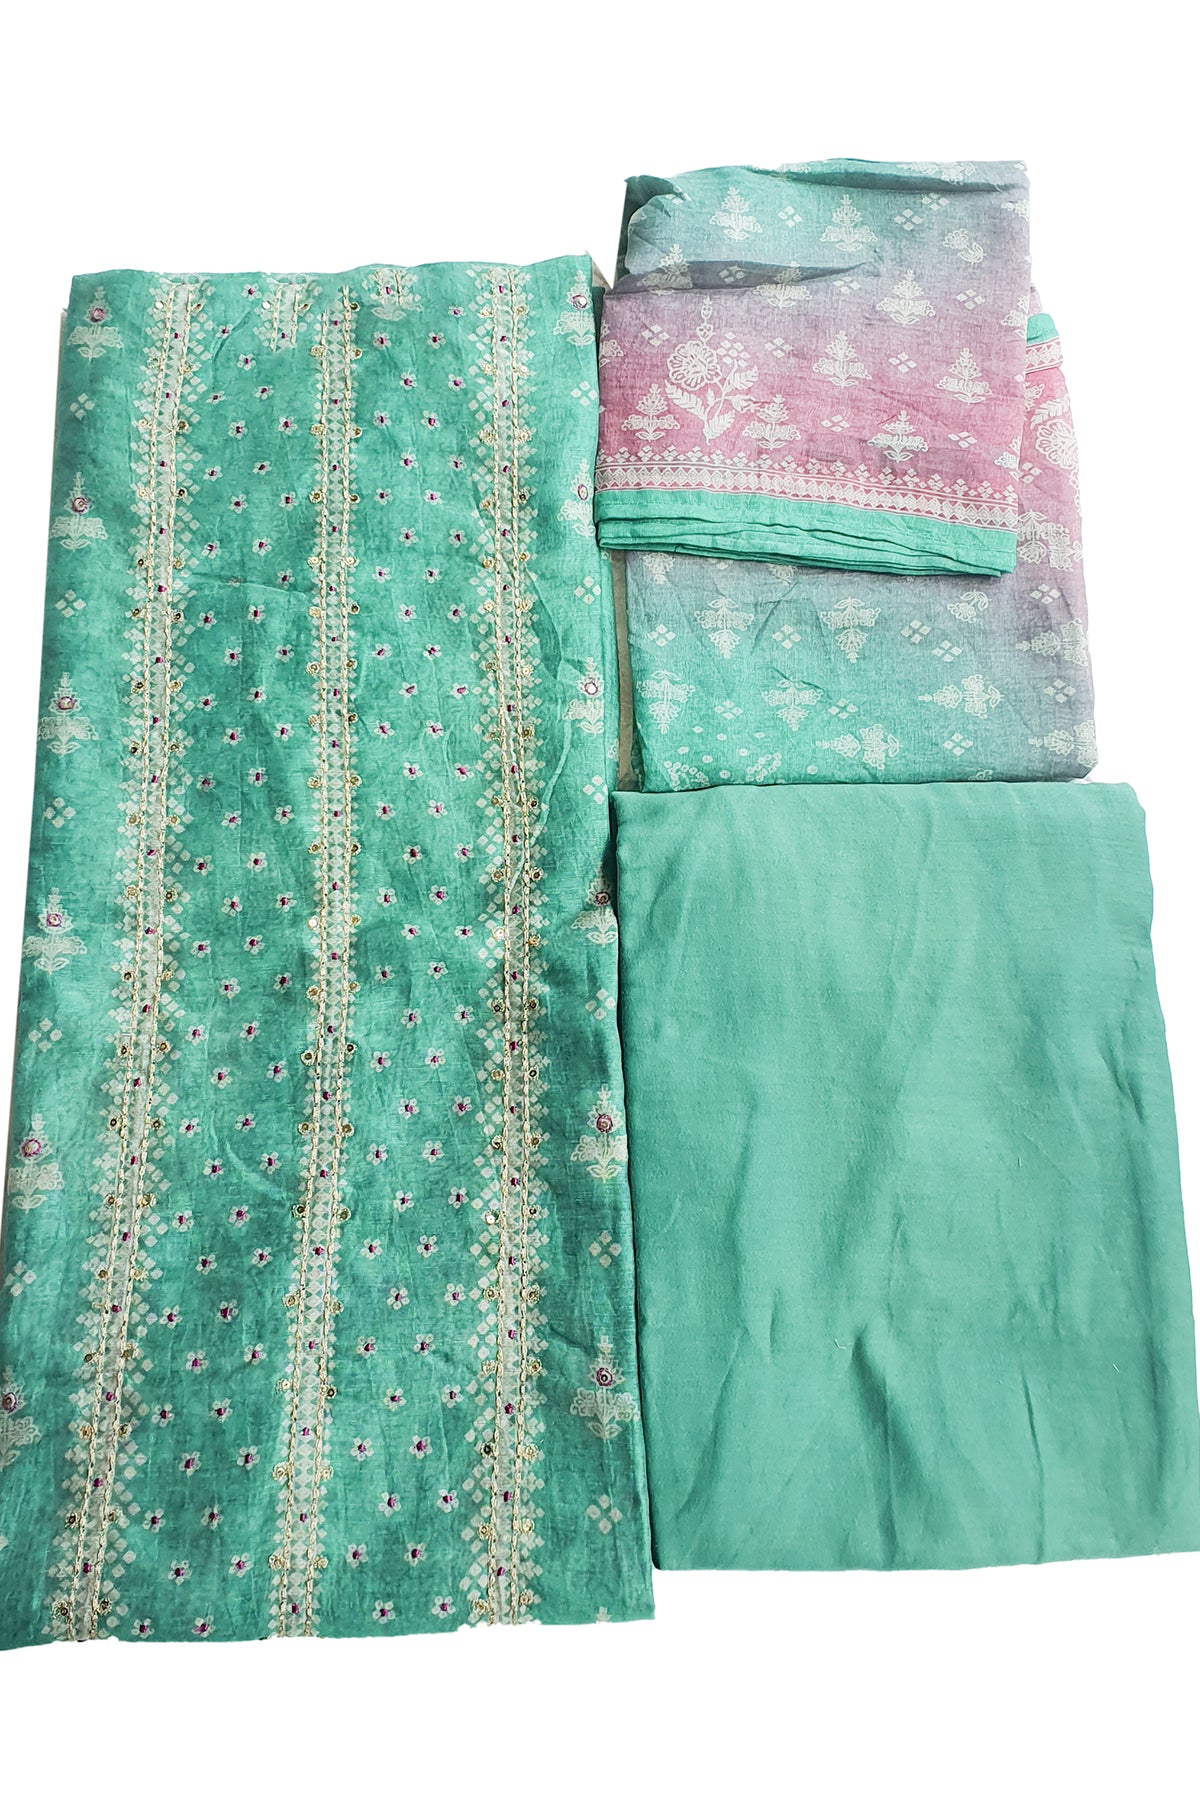 Rama Linen Cotton Printed Unstitched Suit Set